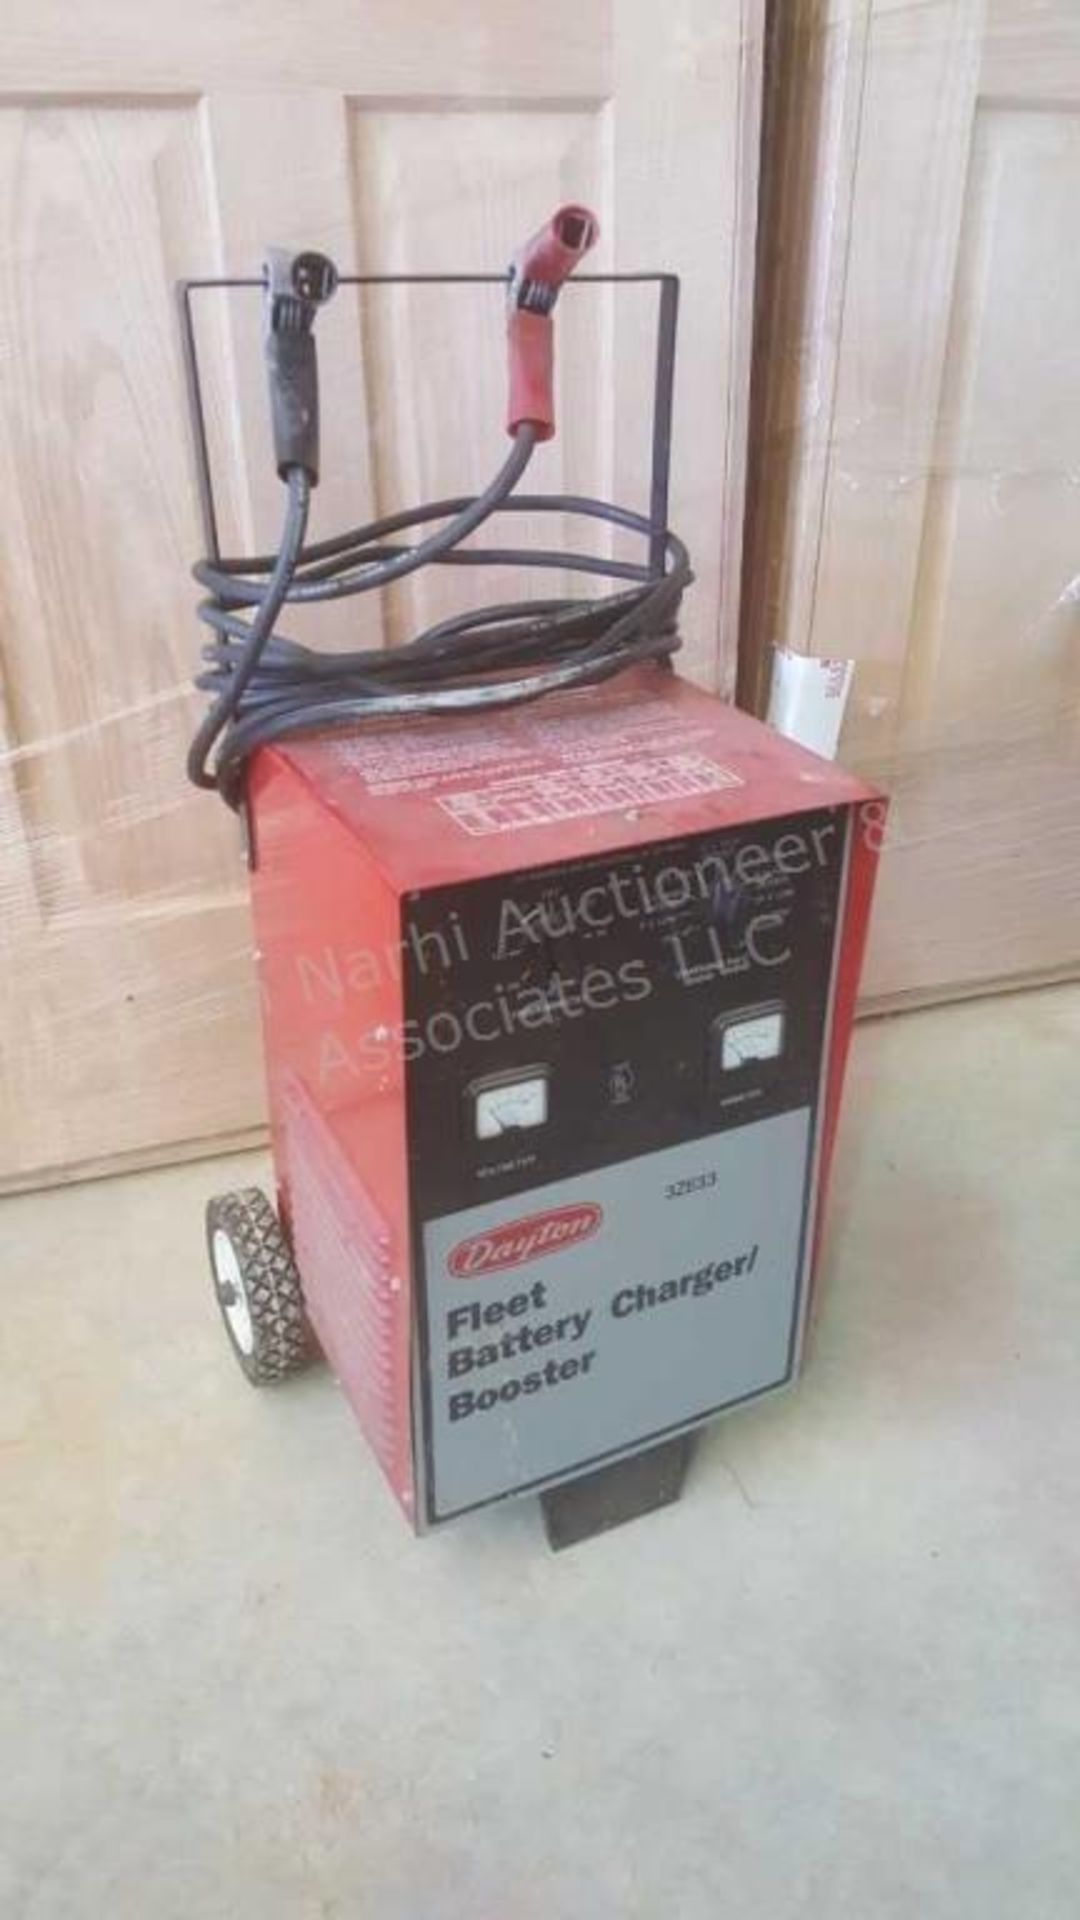 Dayton fleet battery charger/ booster